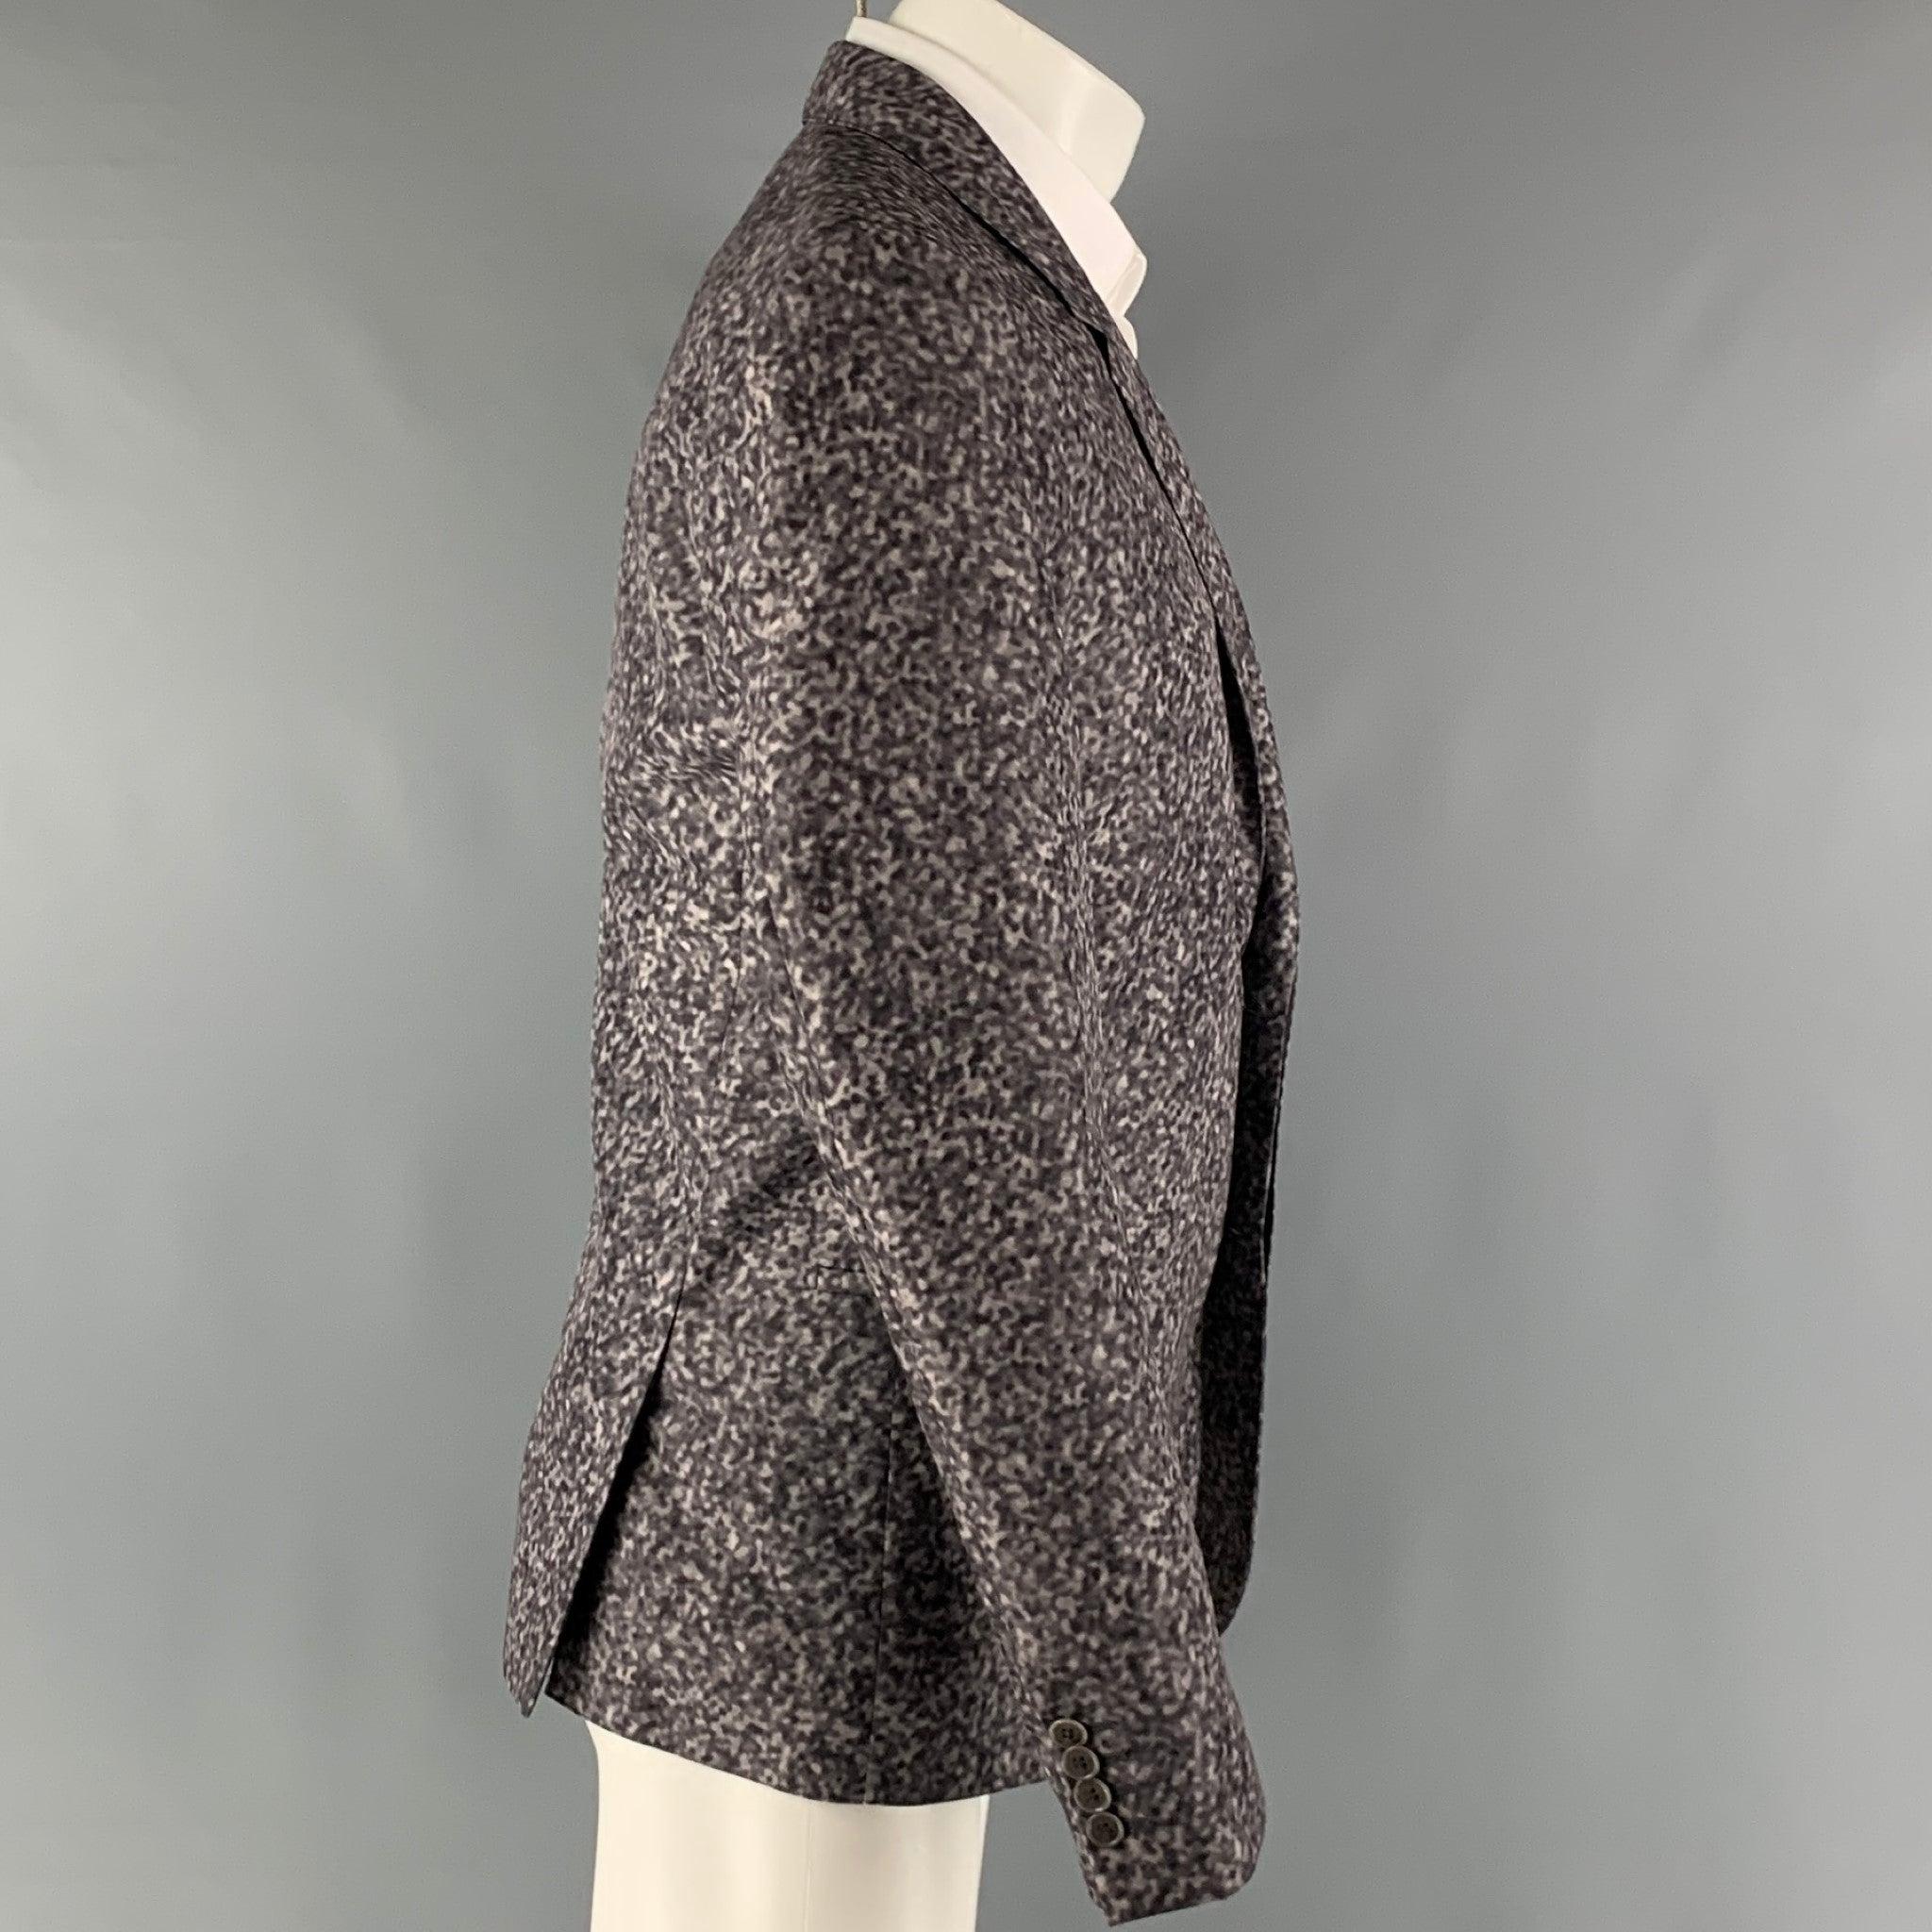 Le manteau de sport CALVIN KLEIN COLLECTION se compose d'un tissu polyester gris à imprimé abstrait, d'une doublure complète, d'une simple poitrine, d'un bouton caché, d'un revers échancré et d'une double fente au dos. Excellent état d'origine.